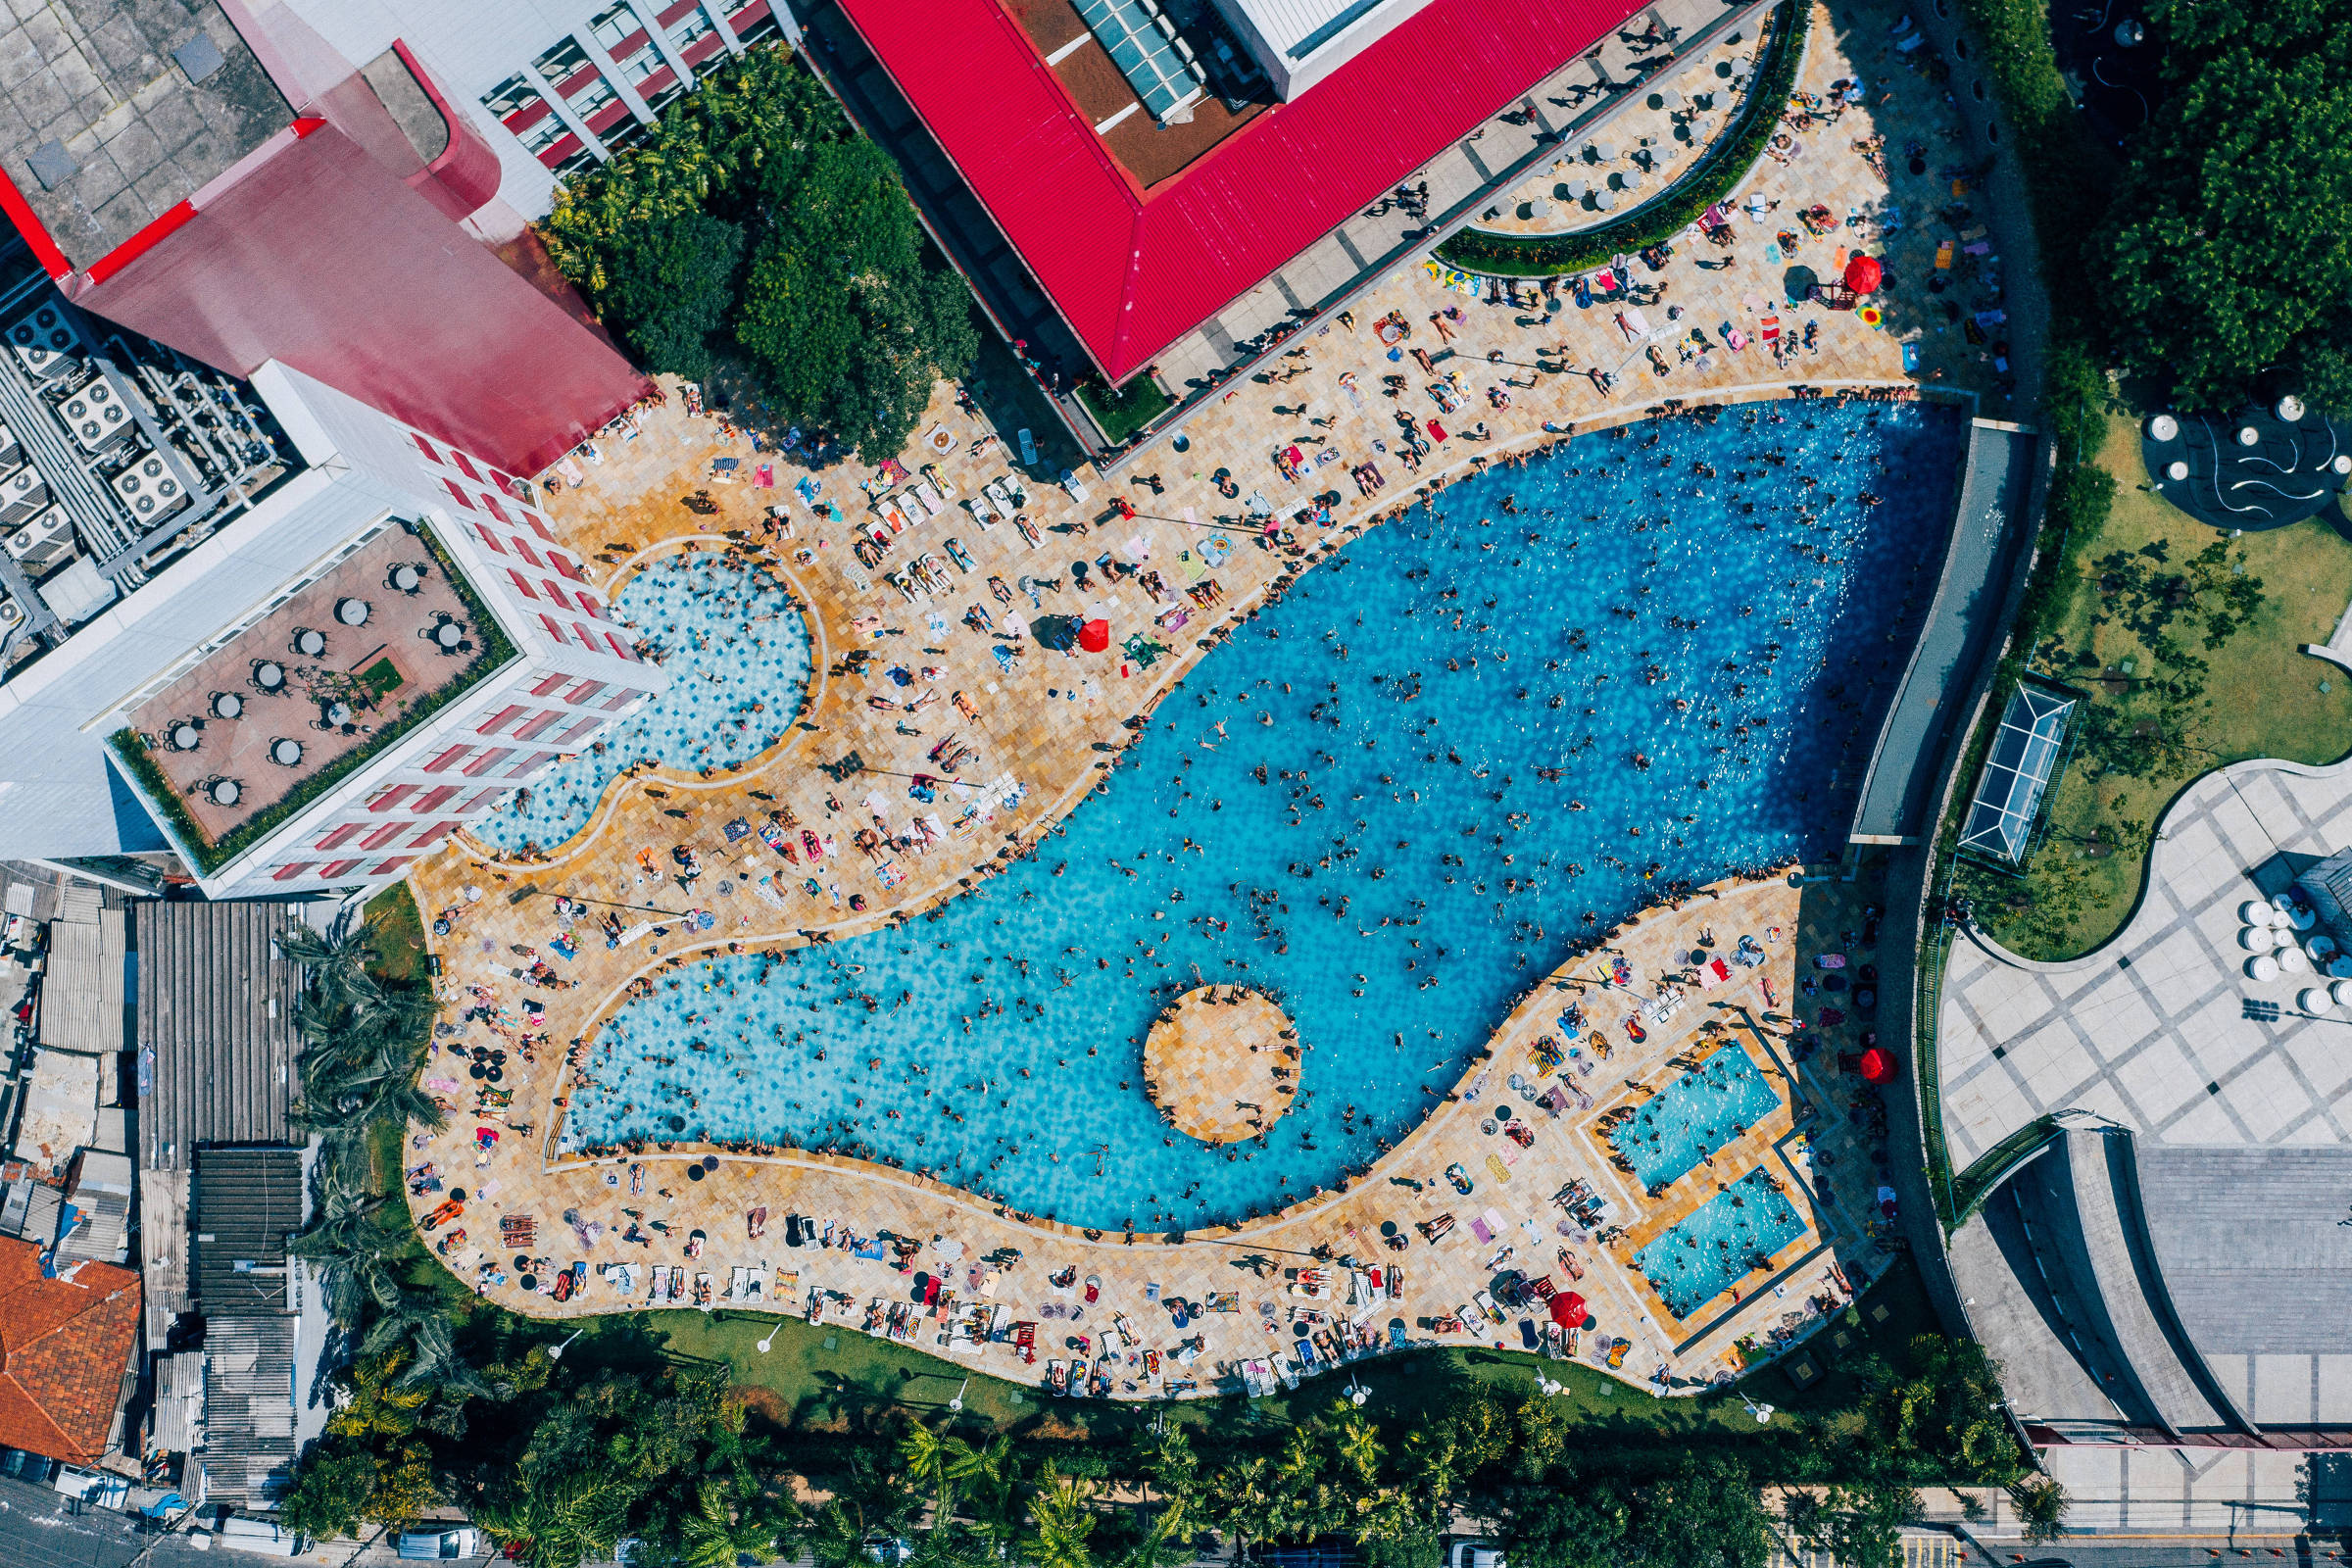 Dicas de piscinas para você frequentar no Centro de São Paulo